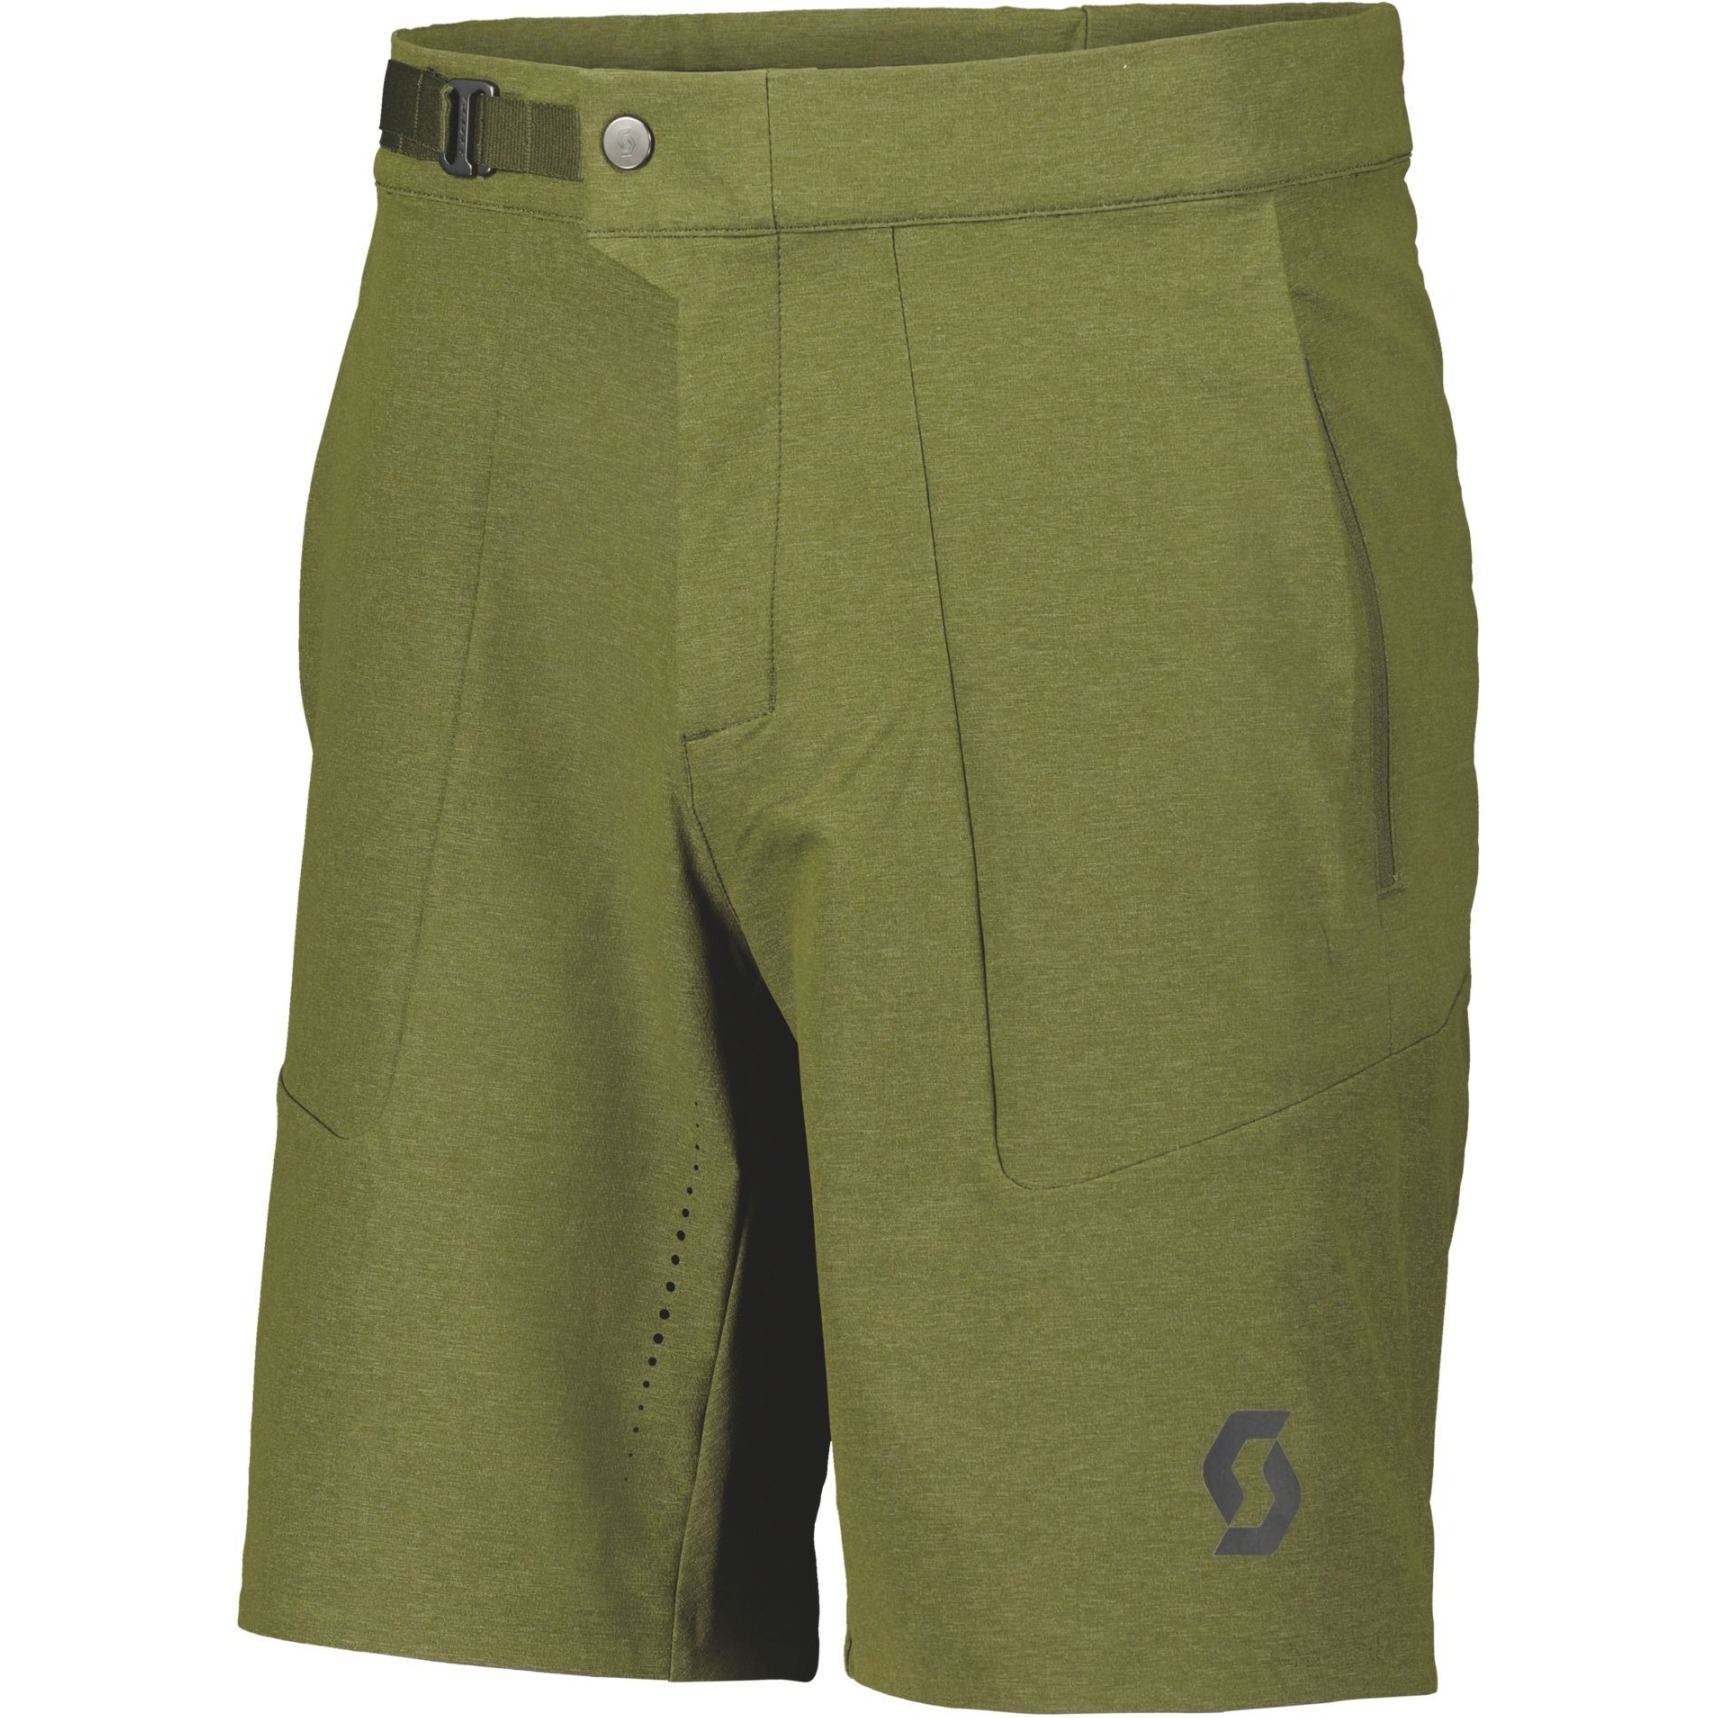 Picture of SCOTT Gravel Shorts Men - fir green